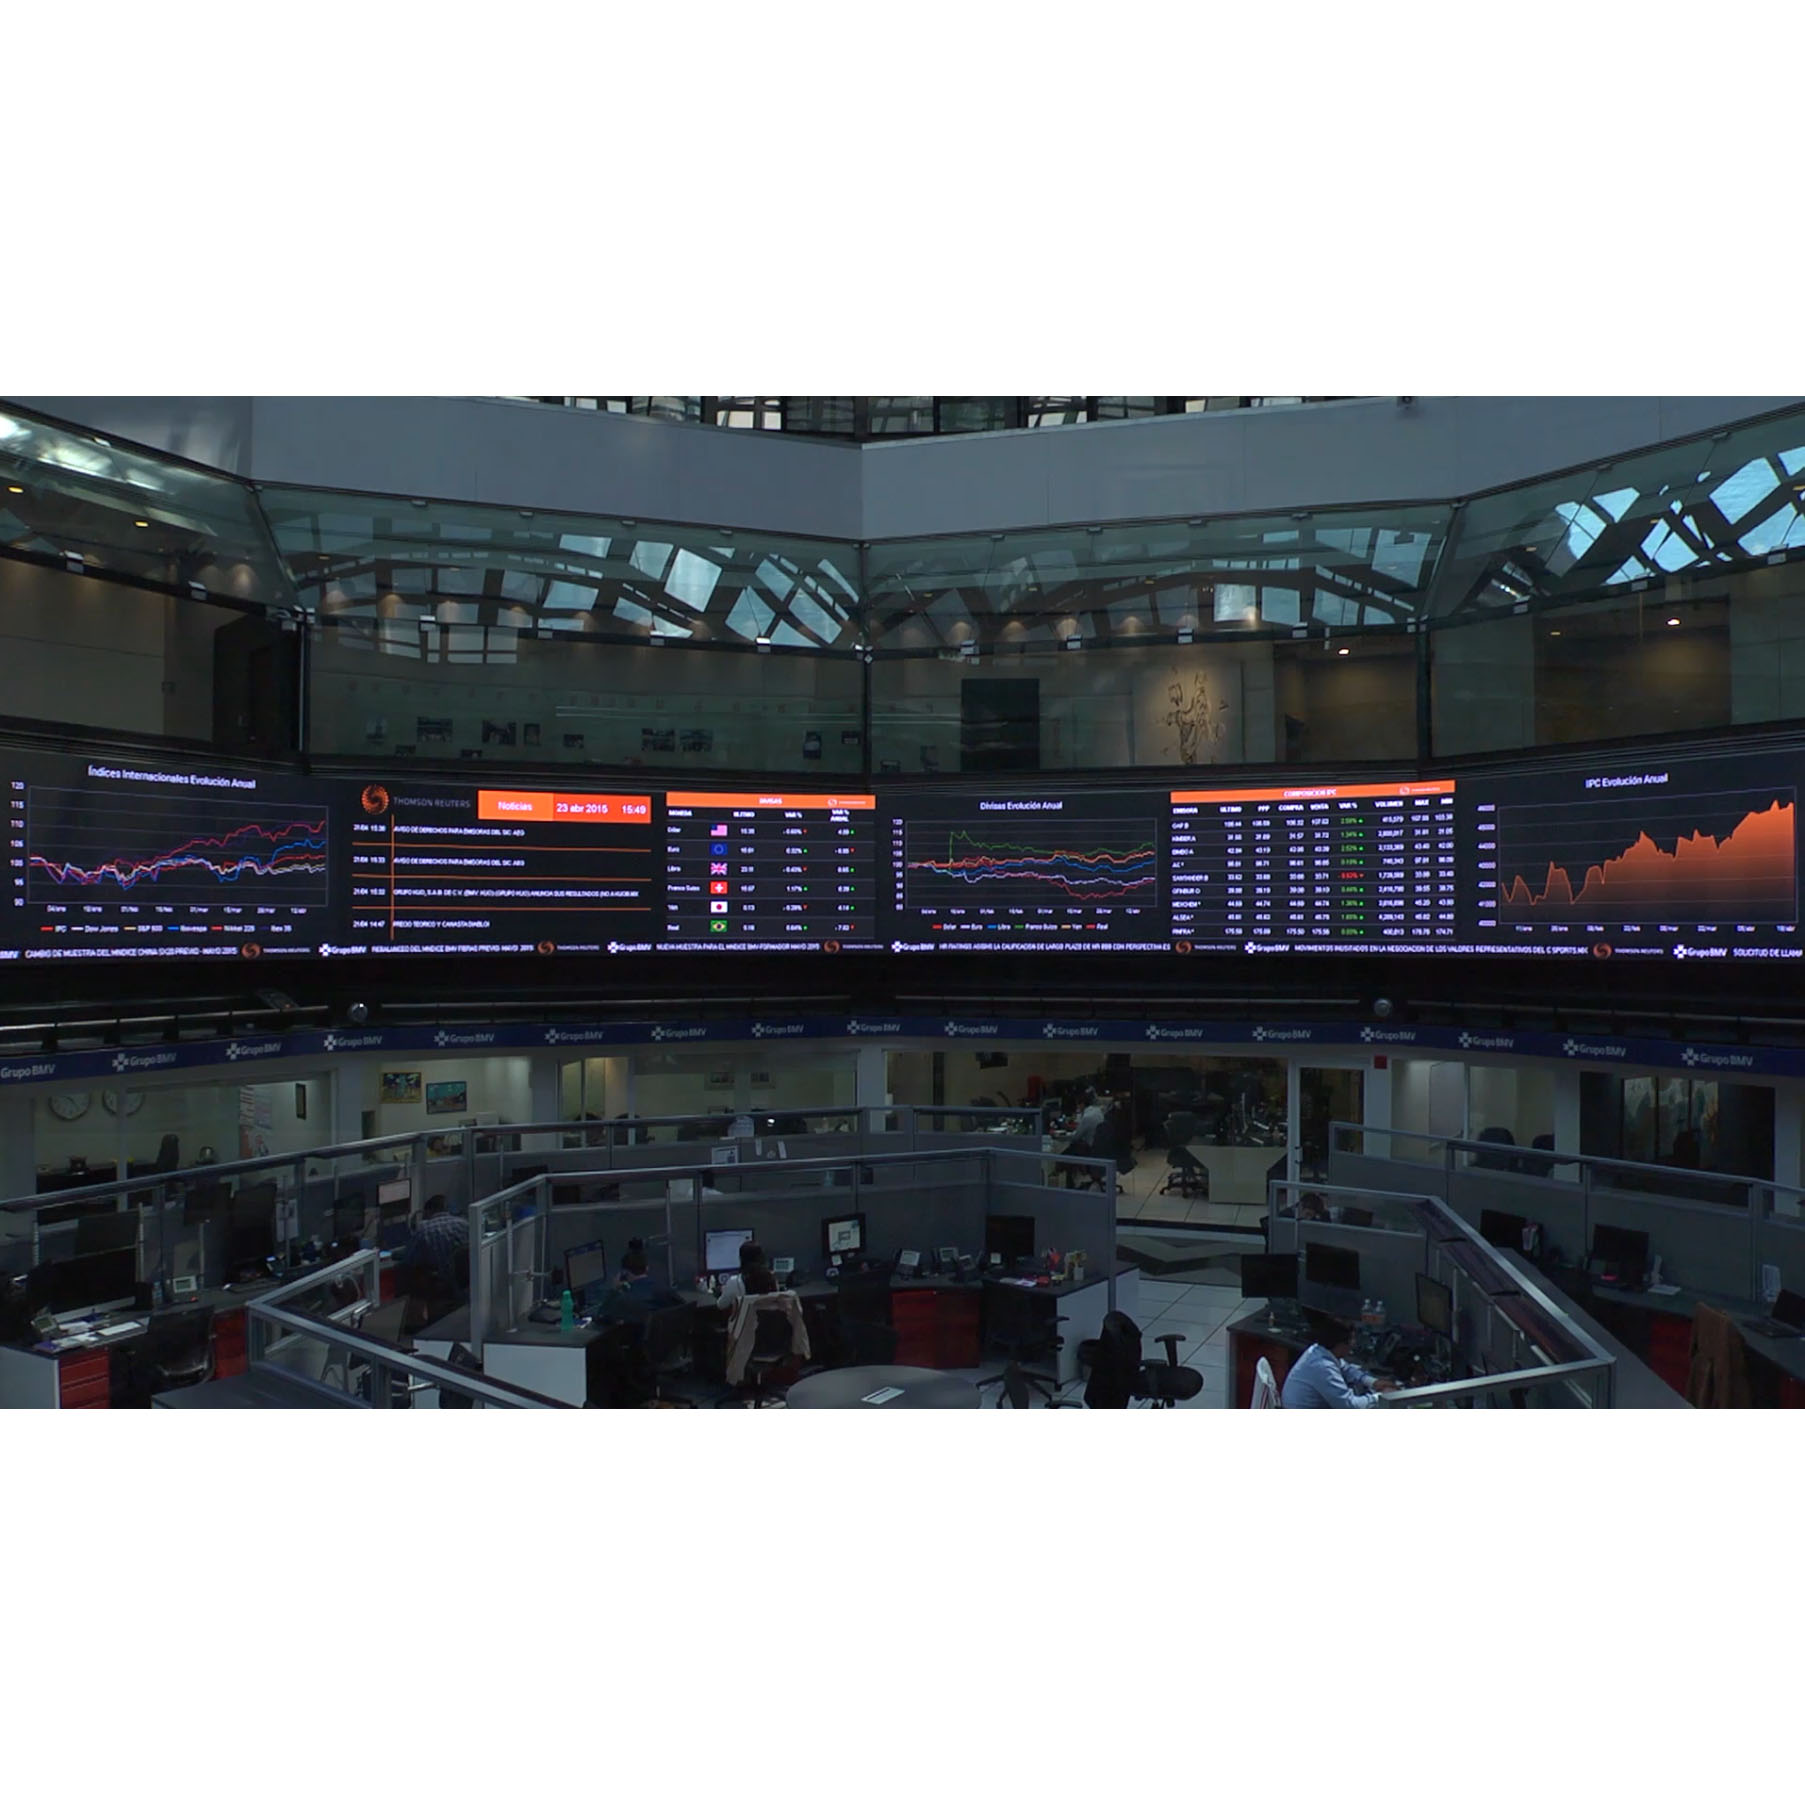 Etiqueta engomada llevada digital a todo color de la pantalla de visualización P10 LED para la acción, financiera, mercado de valores